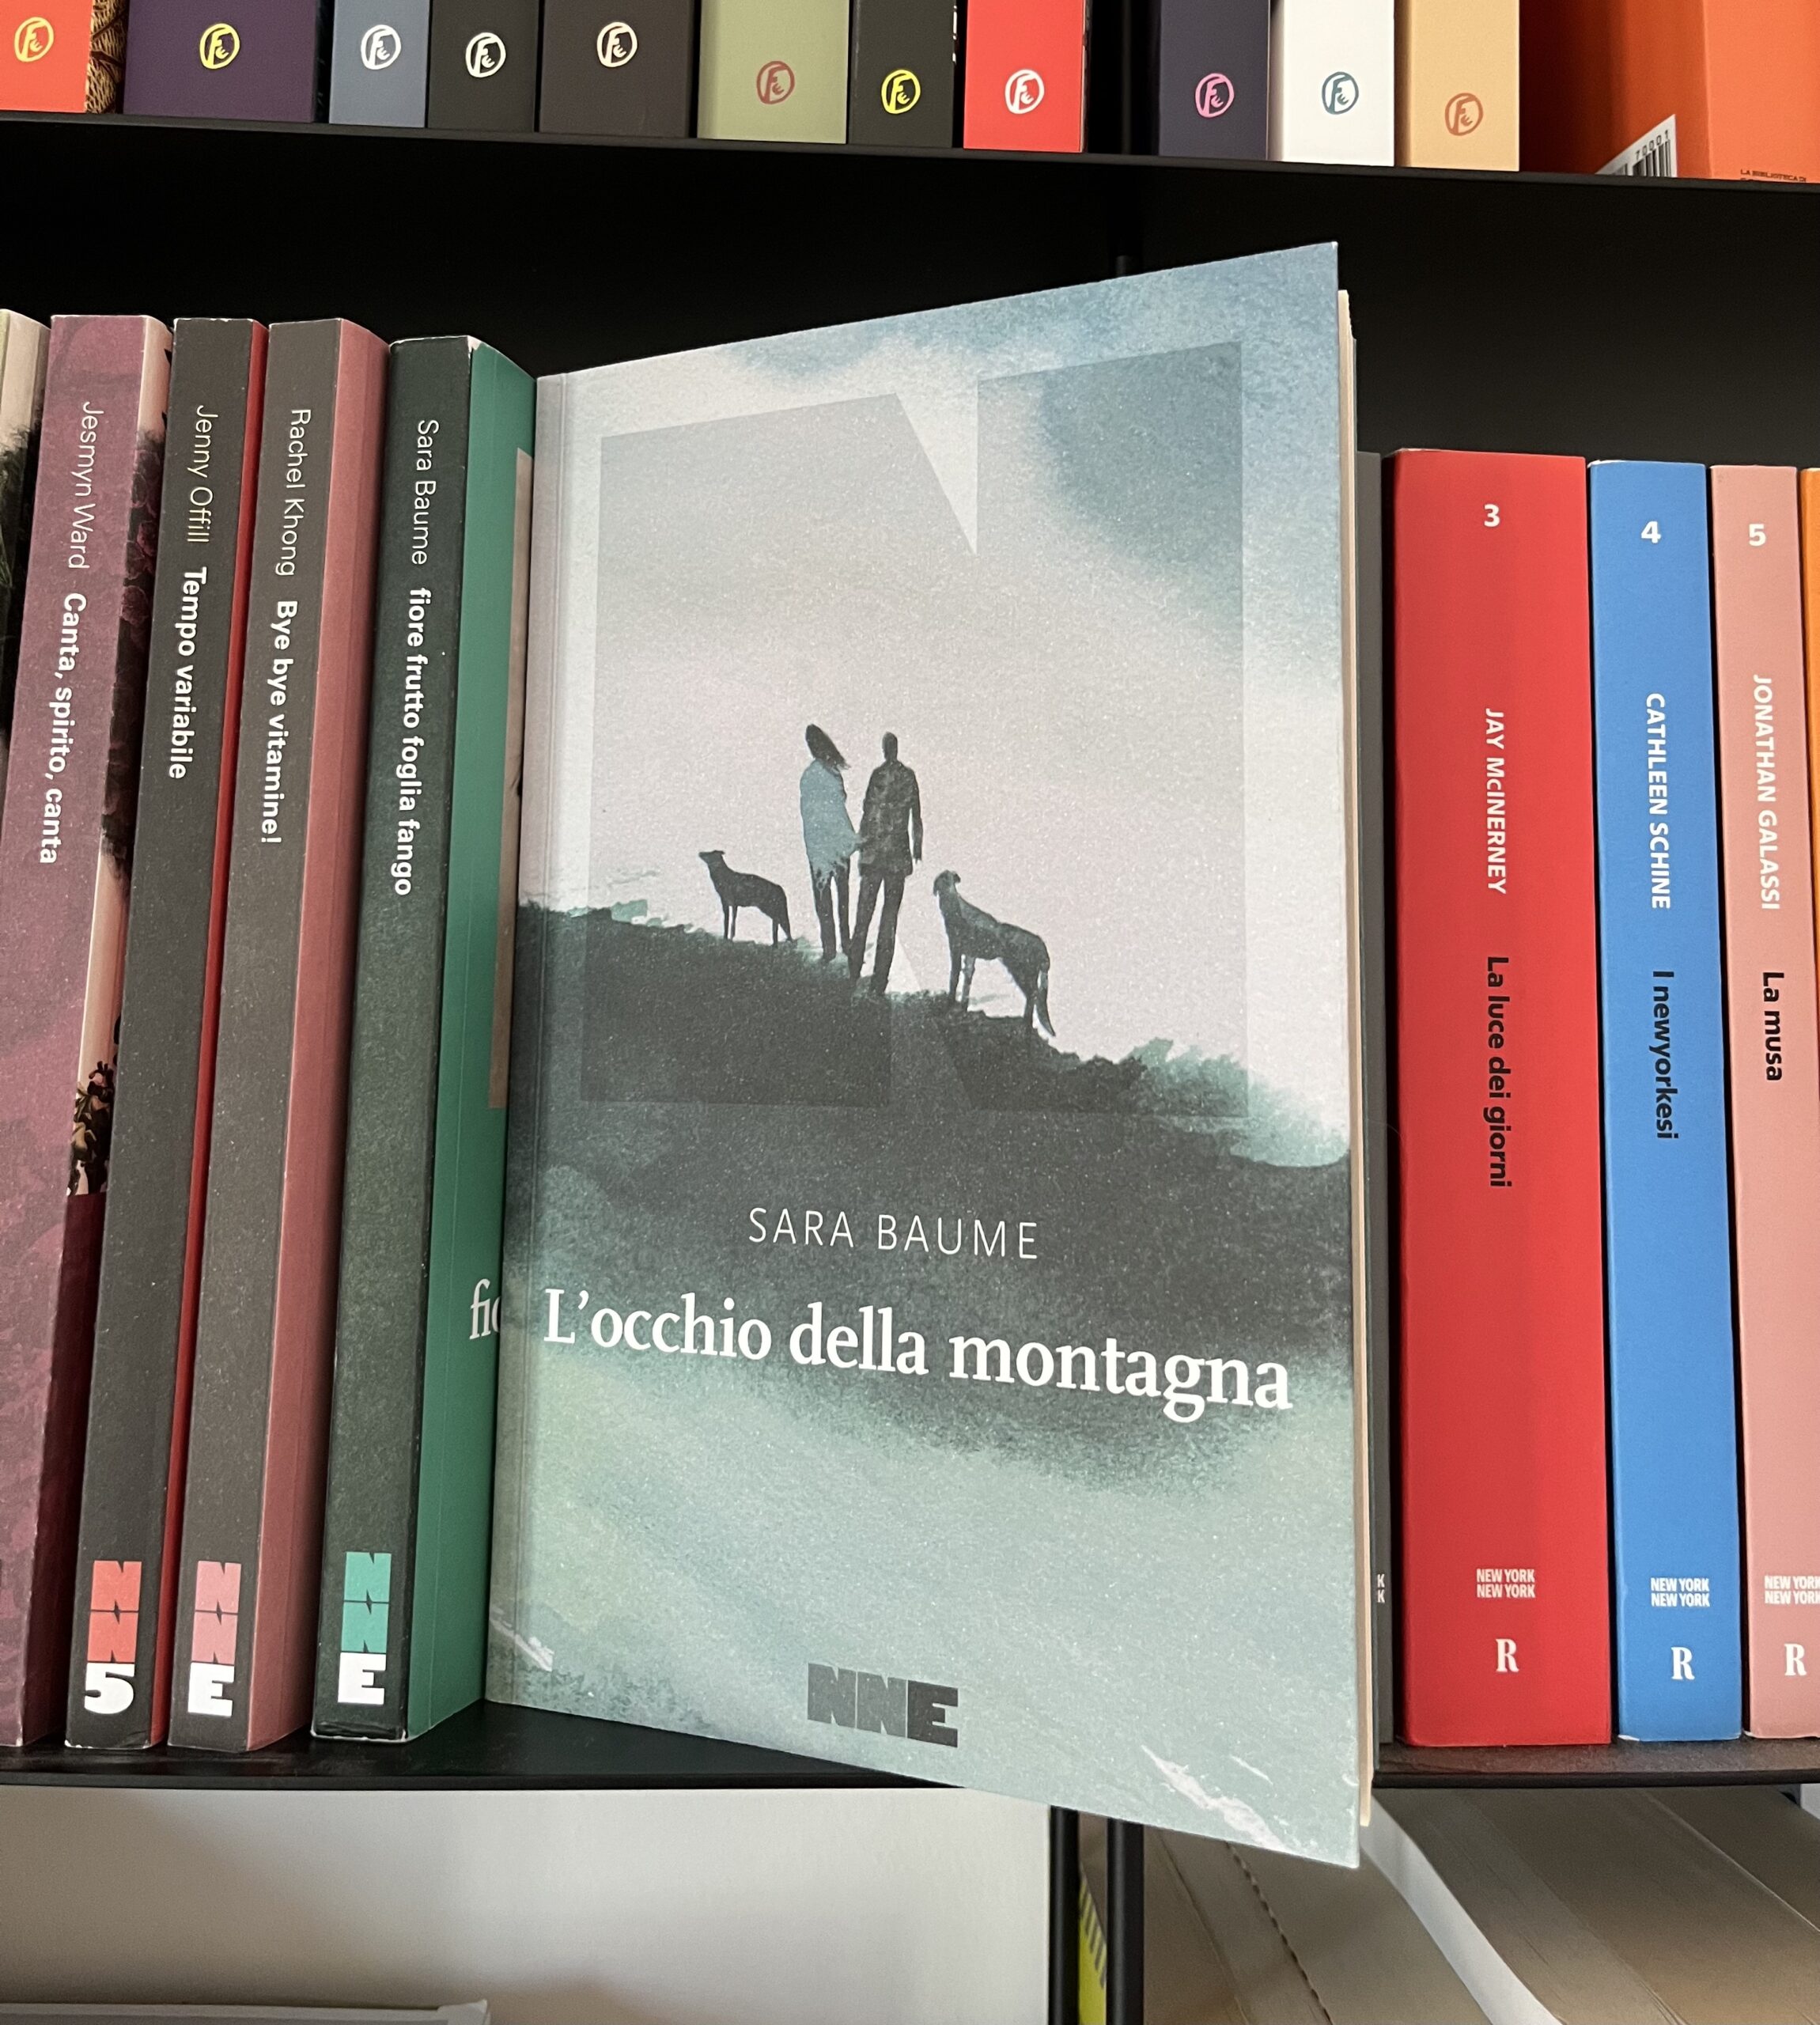 Il libro L'occhio della montagna in una libreria, circondato da altri libri di NN editore.